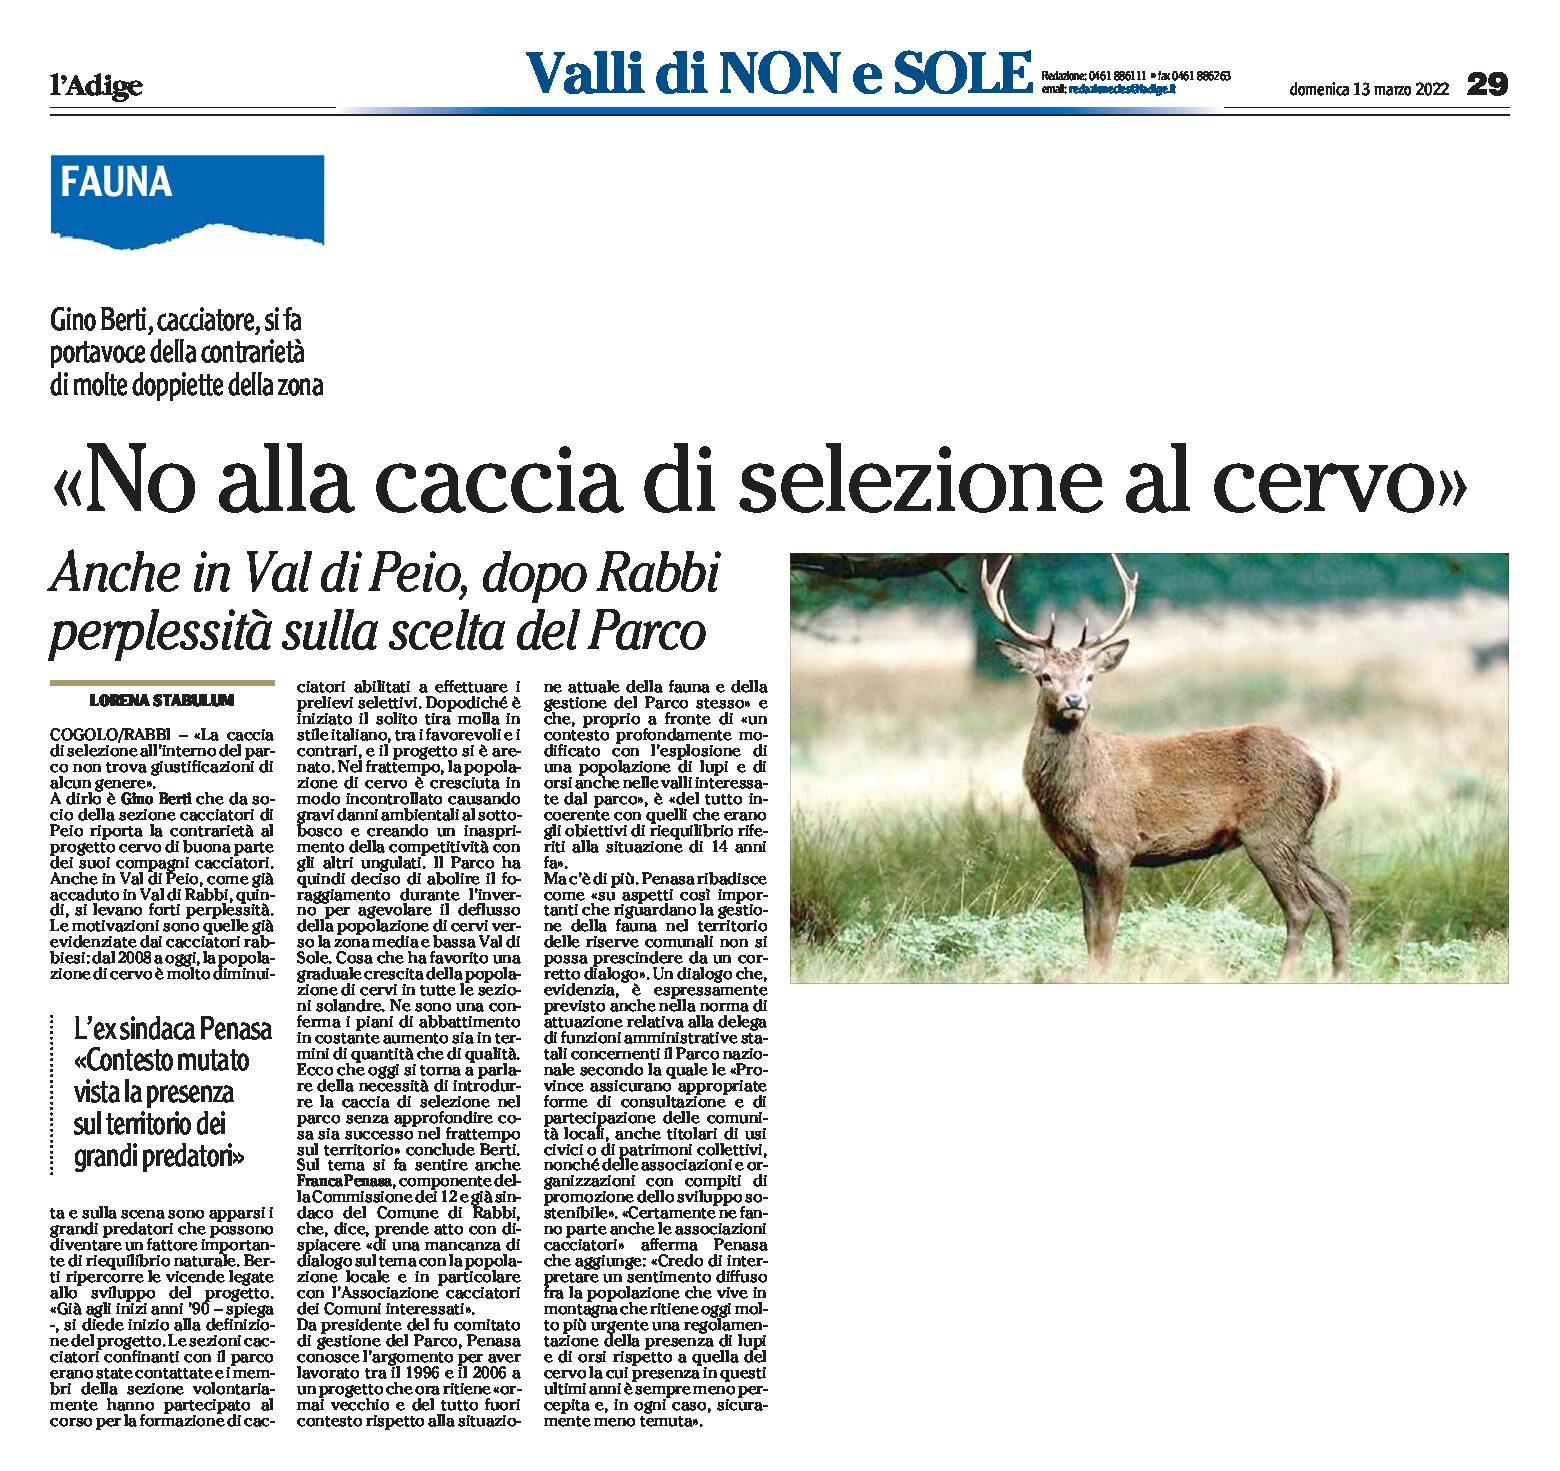 Stelvio, fauna: no alla caccia di selezione al cervo. Perplessità sulla scelta del Parco